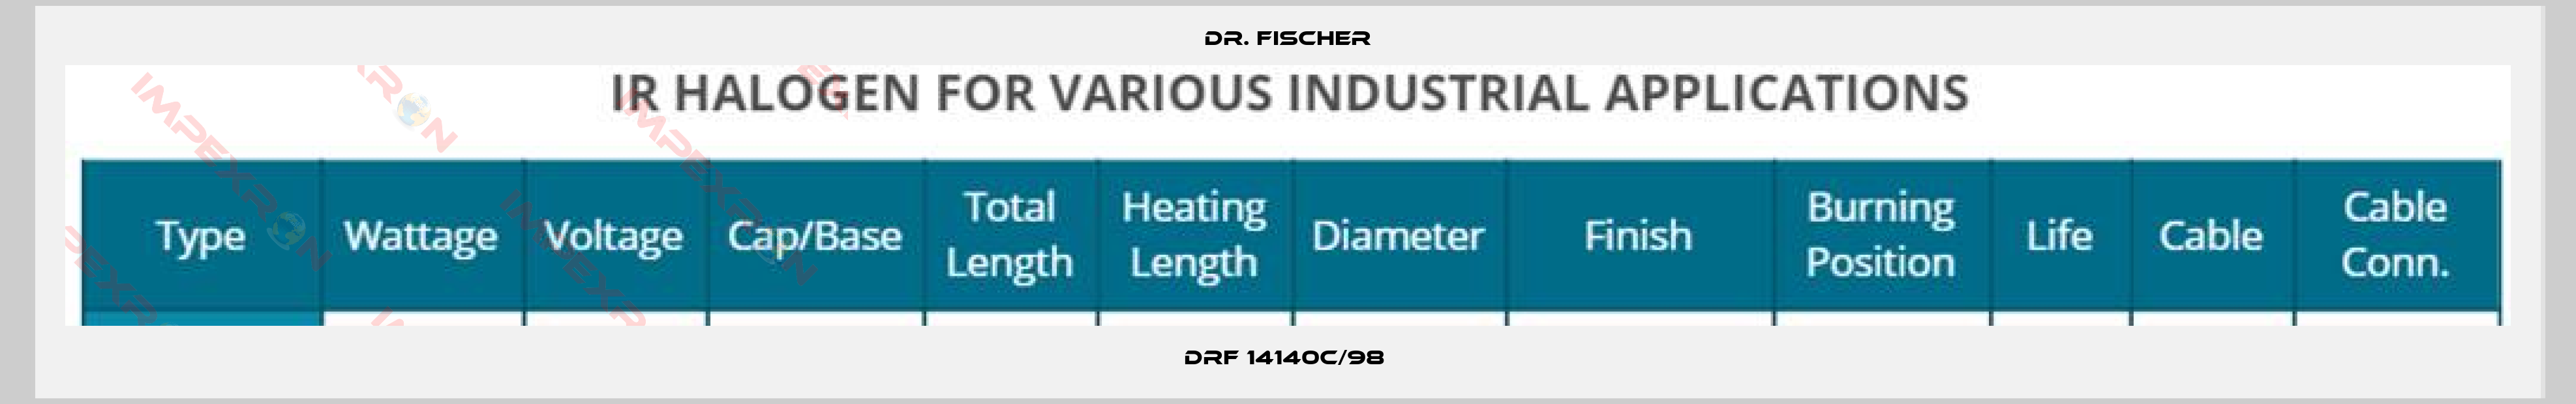 Dr. Fischer-DRF 14140c/98 